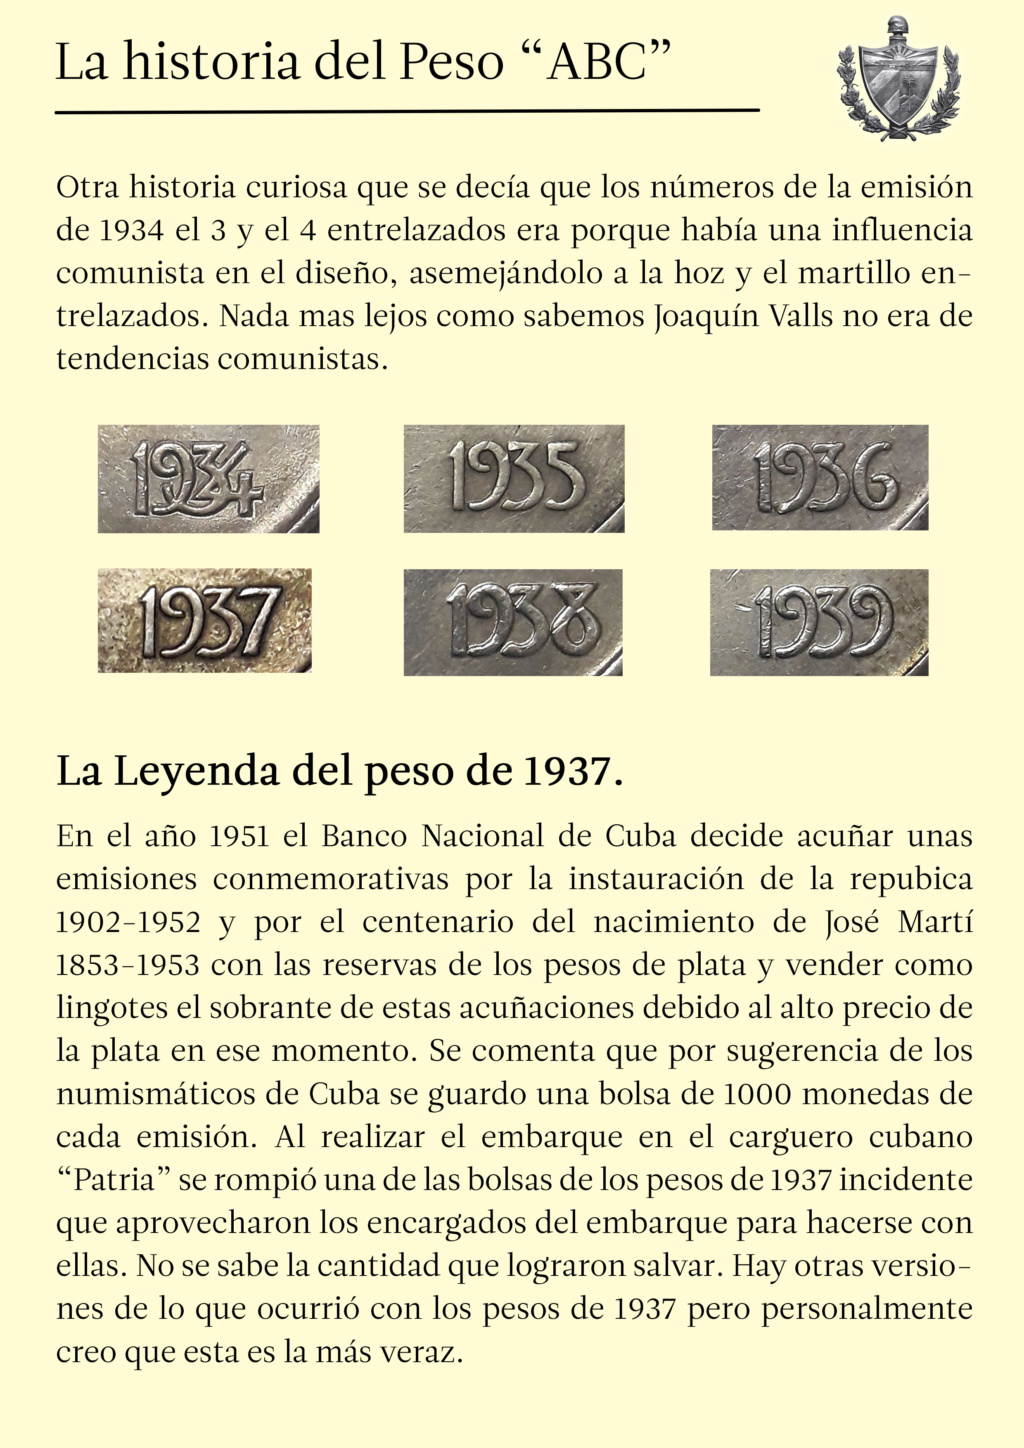 Cuba coleccion pesos ABC y su historia. 710